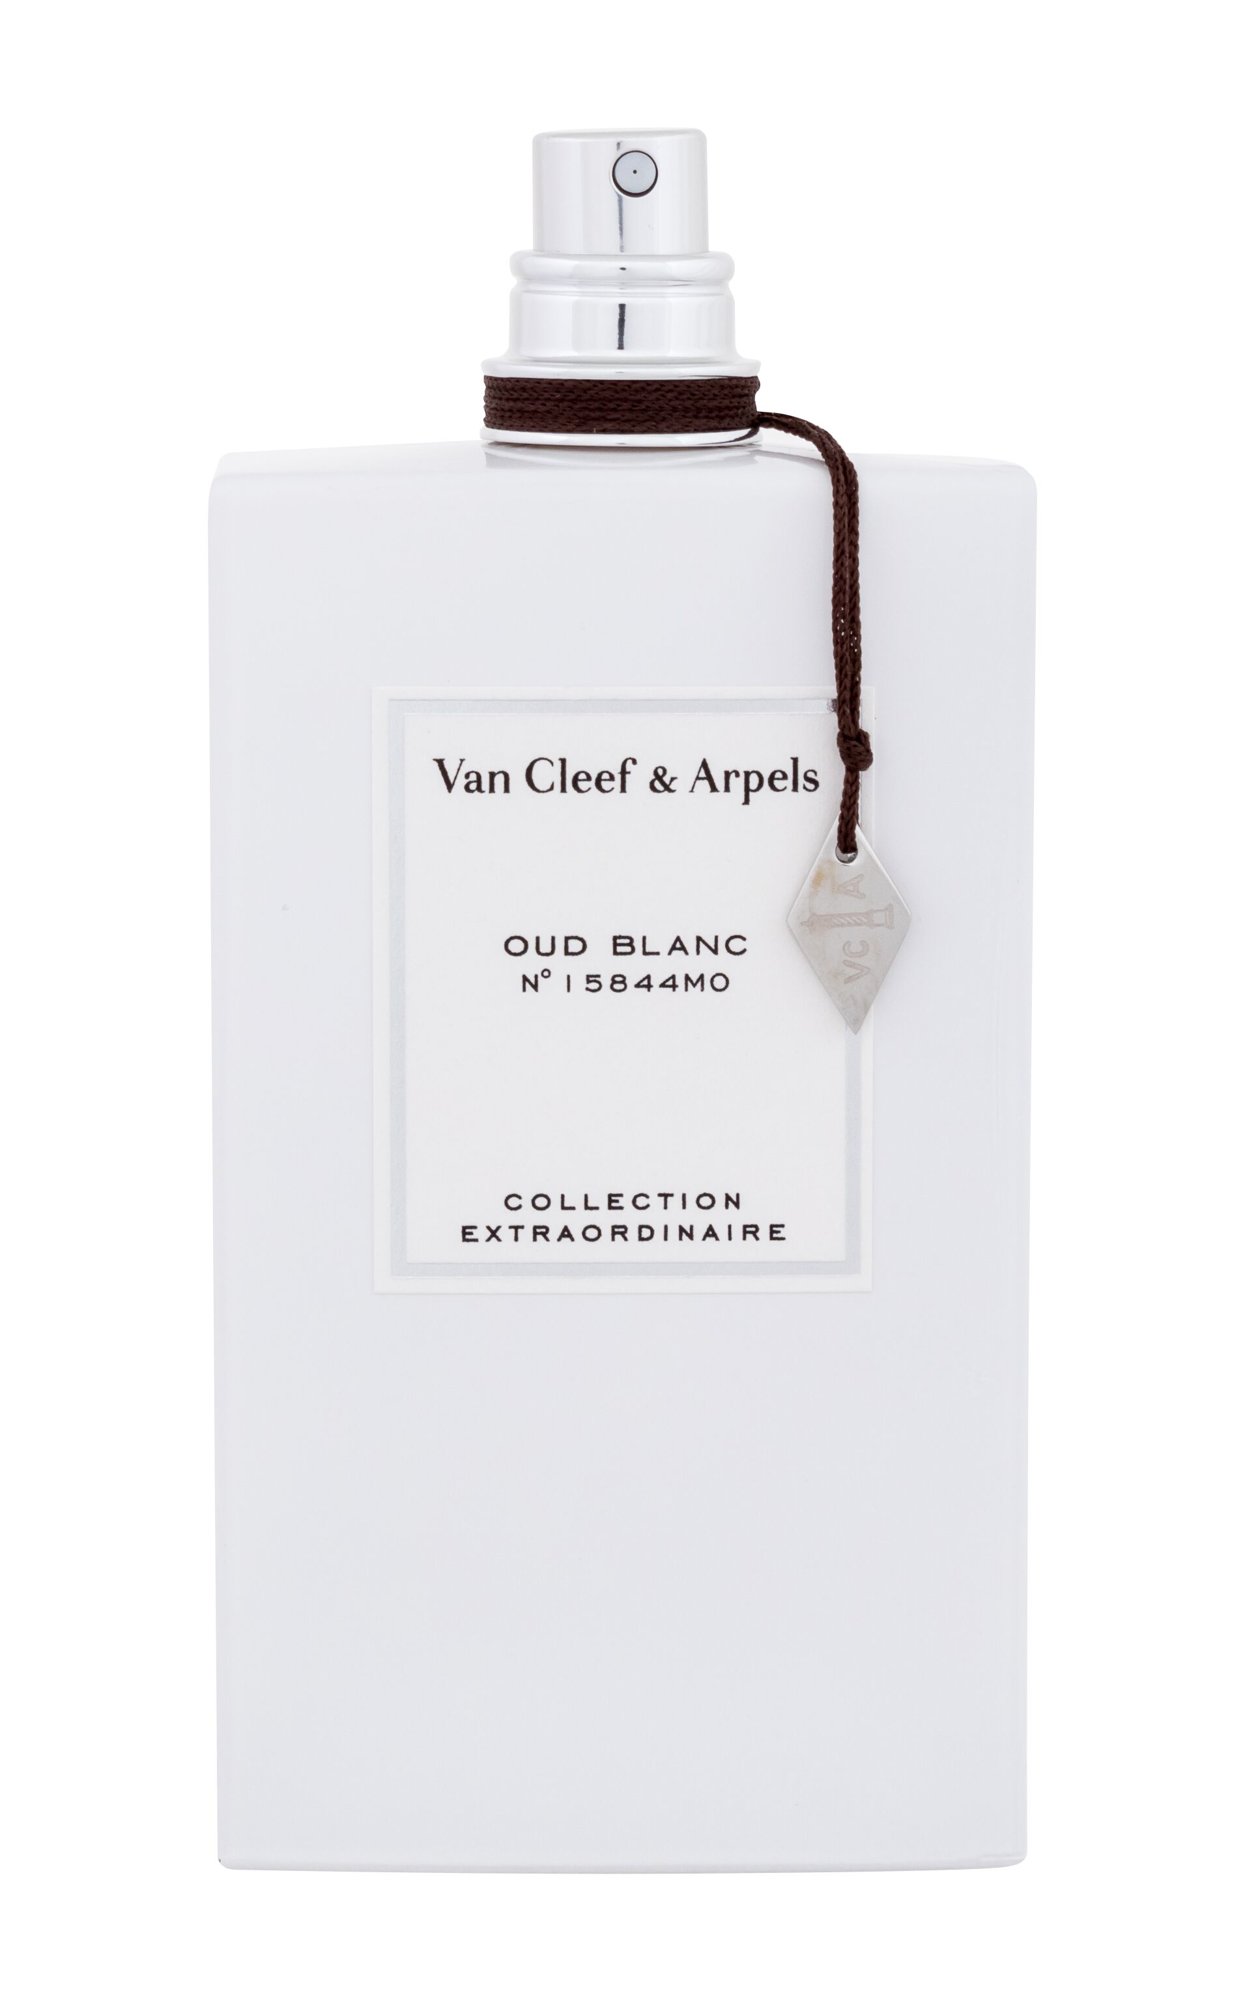 Van Cleef & Arpels Collection Extraordinaire Oud Blanc 10 ml NIŠINIAI kvepalų mėginukas (atomaizeris) Unisex EDP